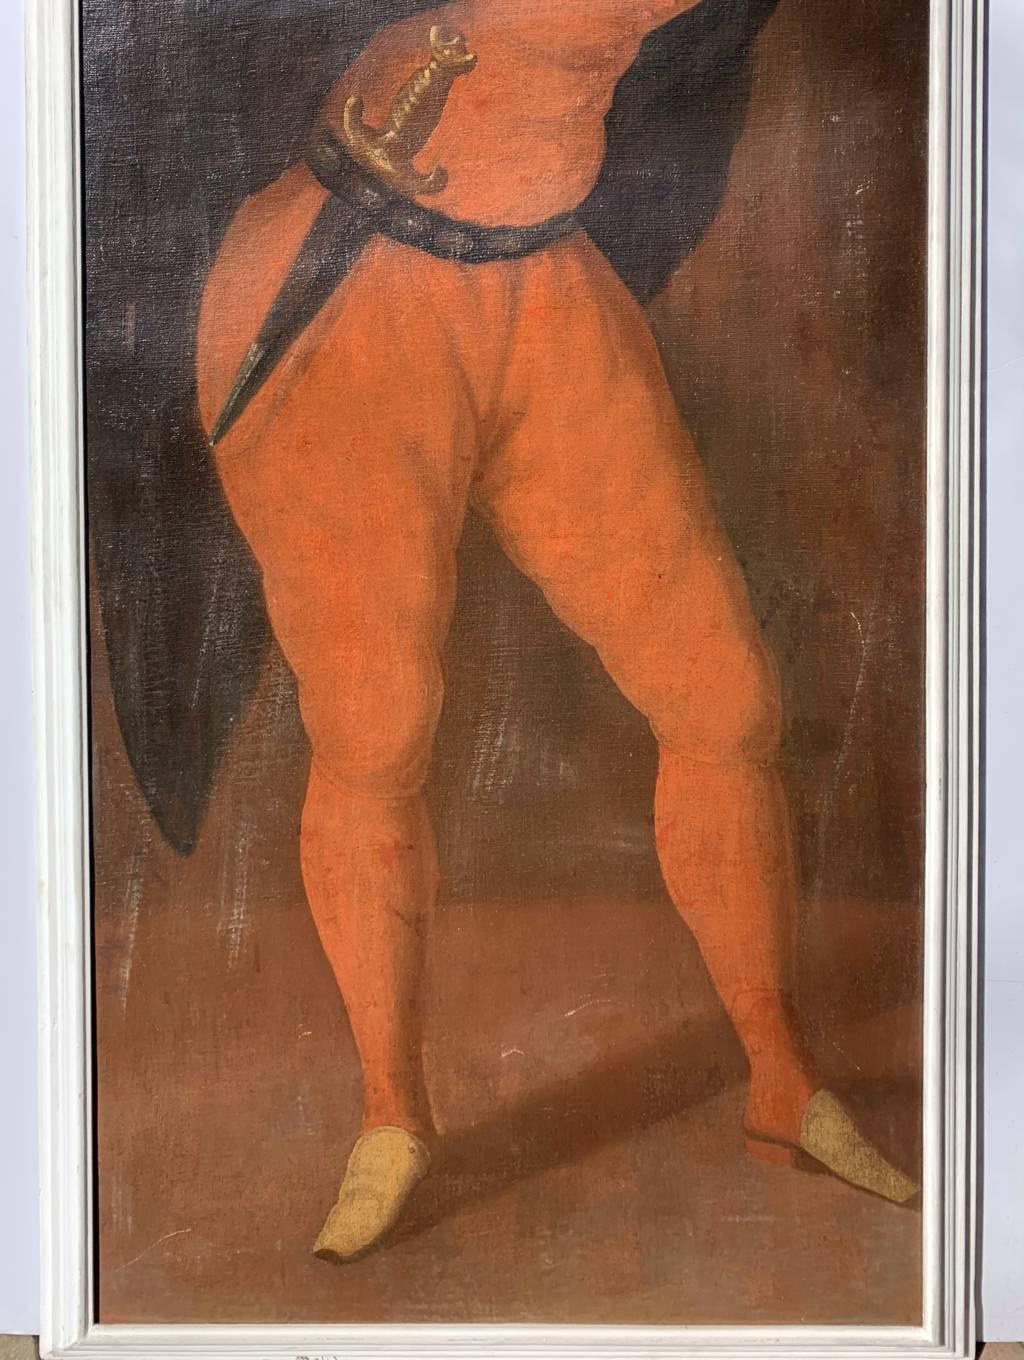 Maître vénitien (XVIIIe siècle) - Masque de Pantalone.

161 x 68 cm sans cadre, 169,5 x 76,5 cm avec cadre.

Peinture à l'huile ancienne sur toile, dans un cadre en bois laqué blanc.

Condit : Toile originale collée sur le panneau. Bon état de la